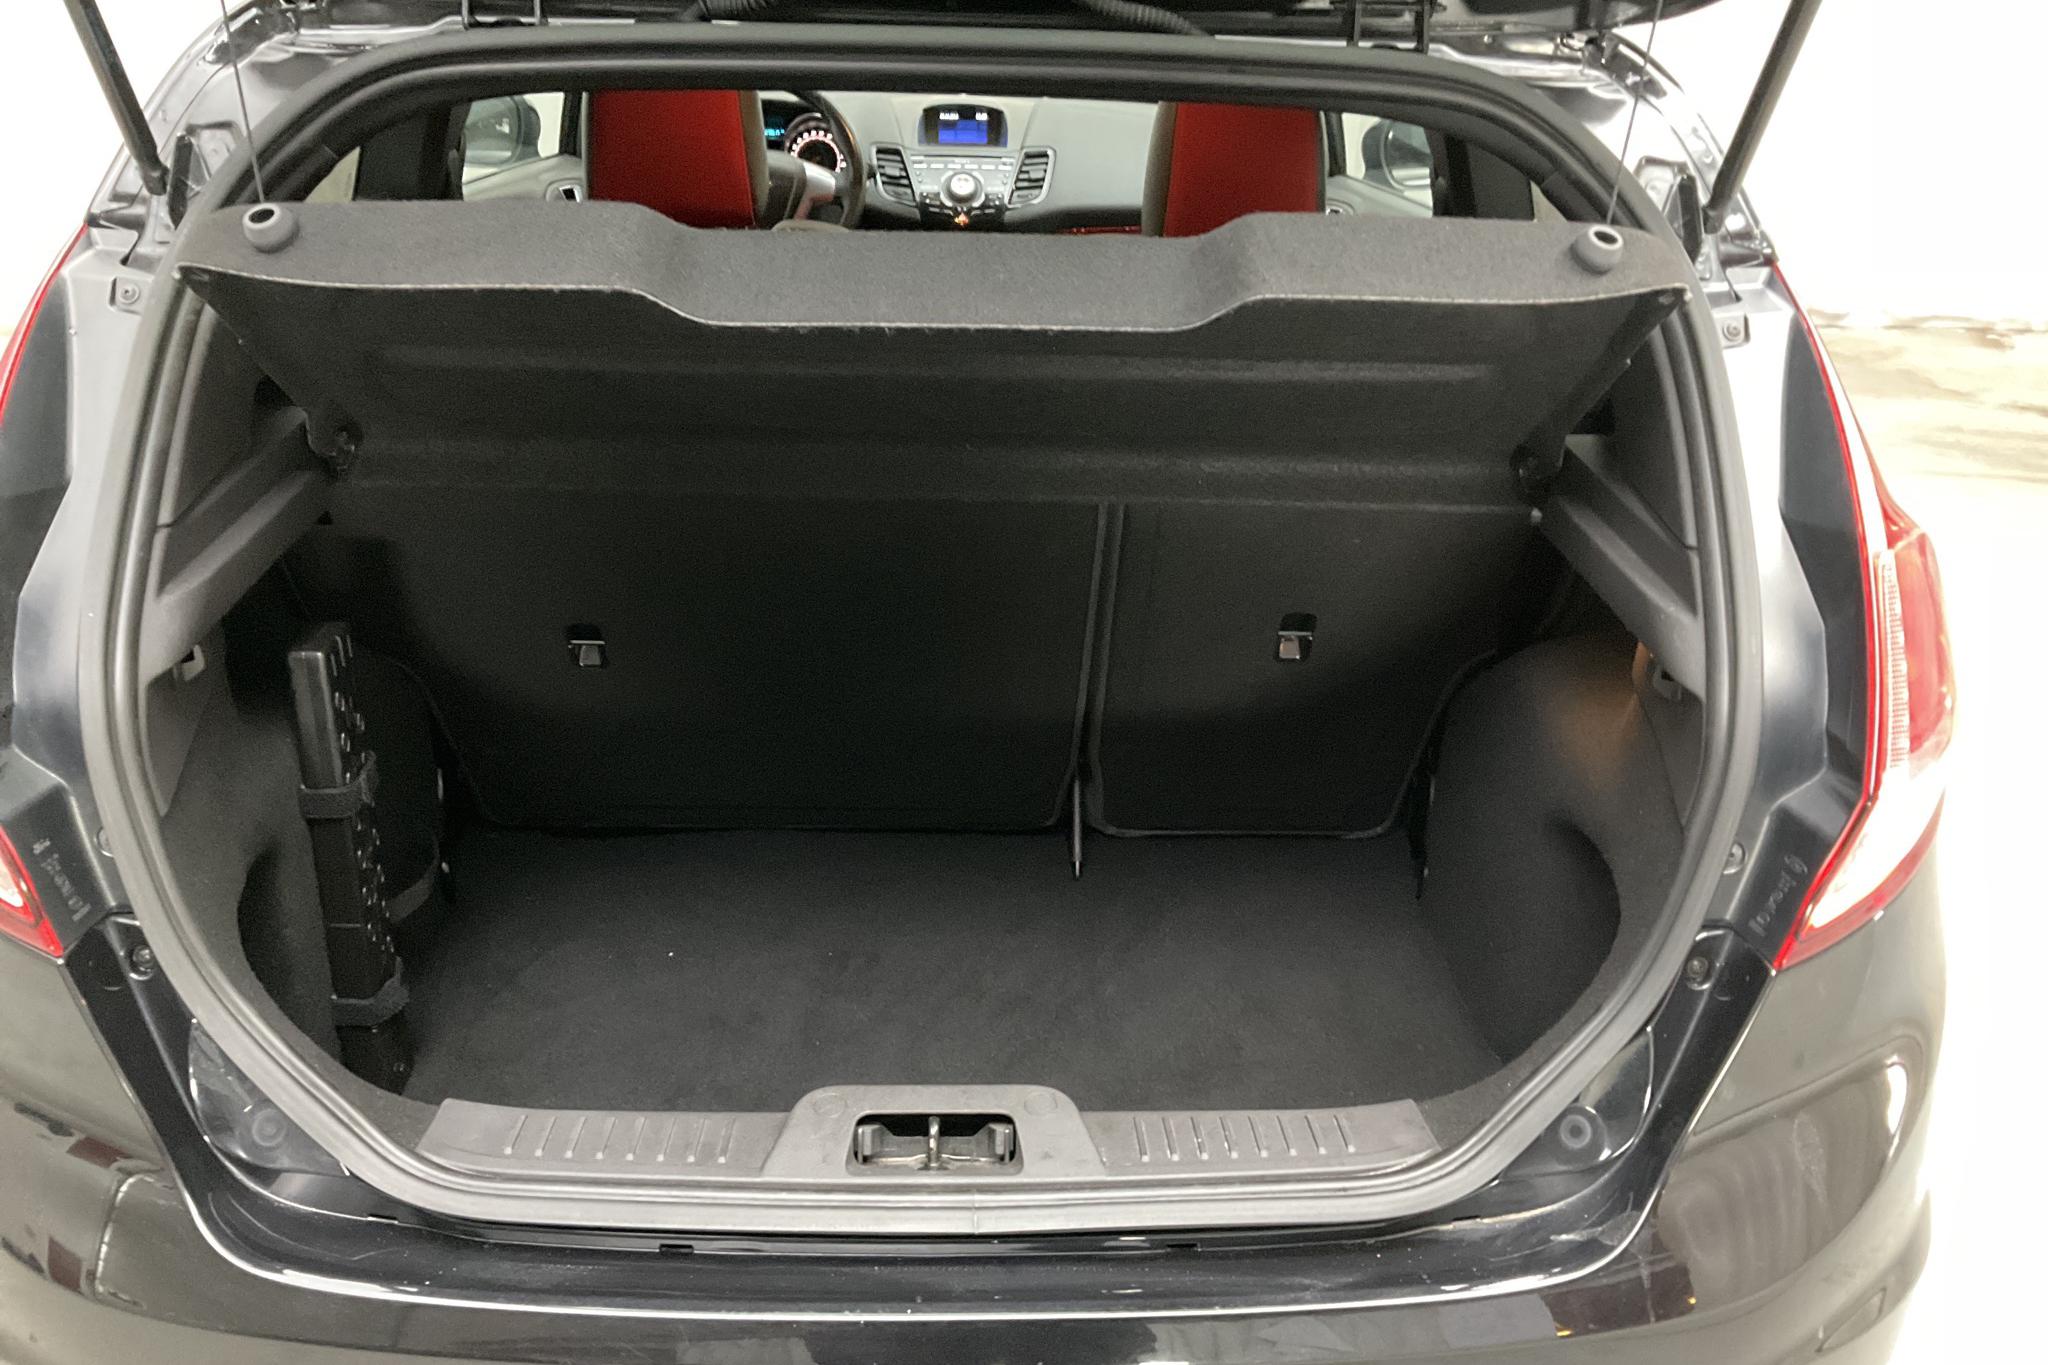 Ford Fiesta 1.6 ST 3dr (182hk) - 7 862 mil - Manuell - svart - 2014